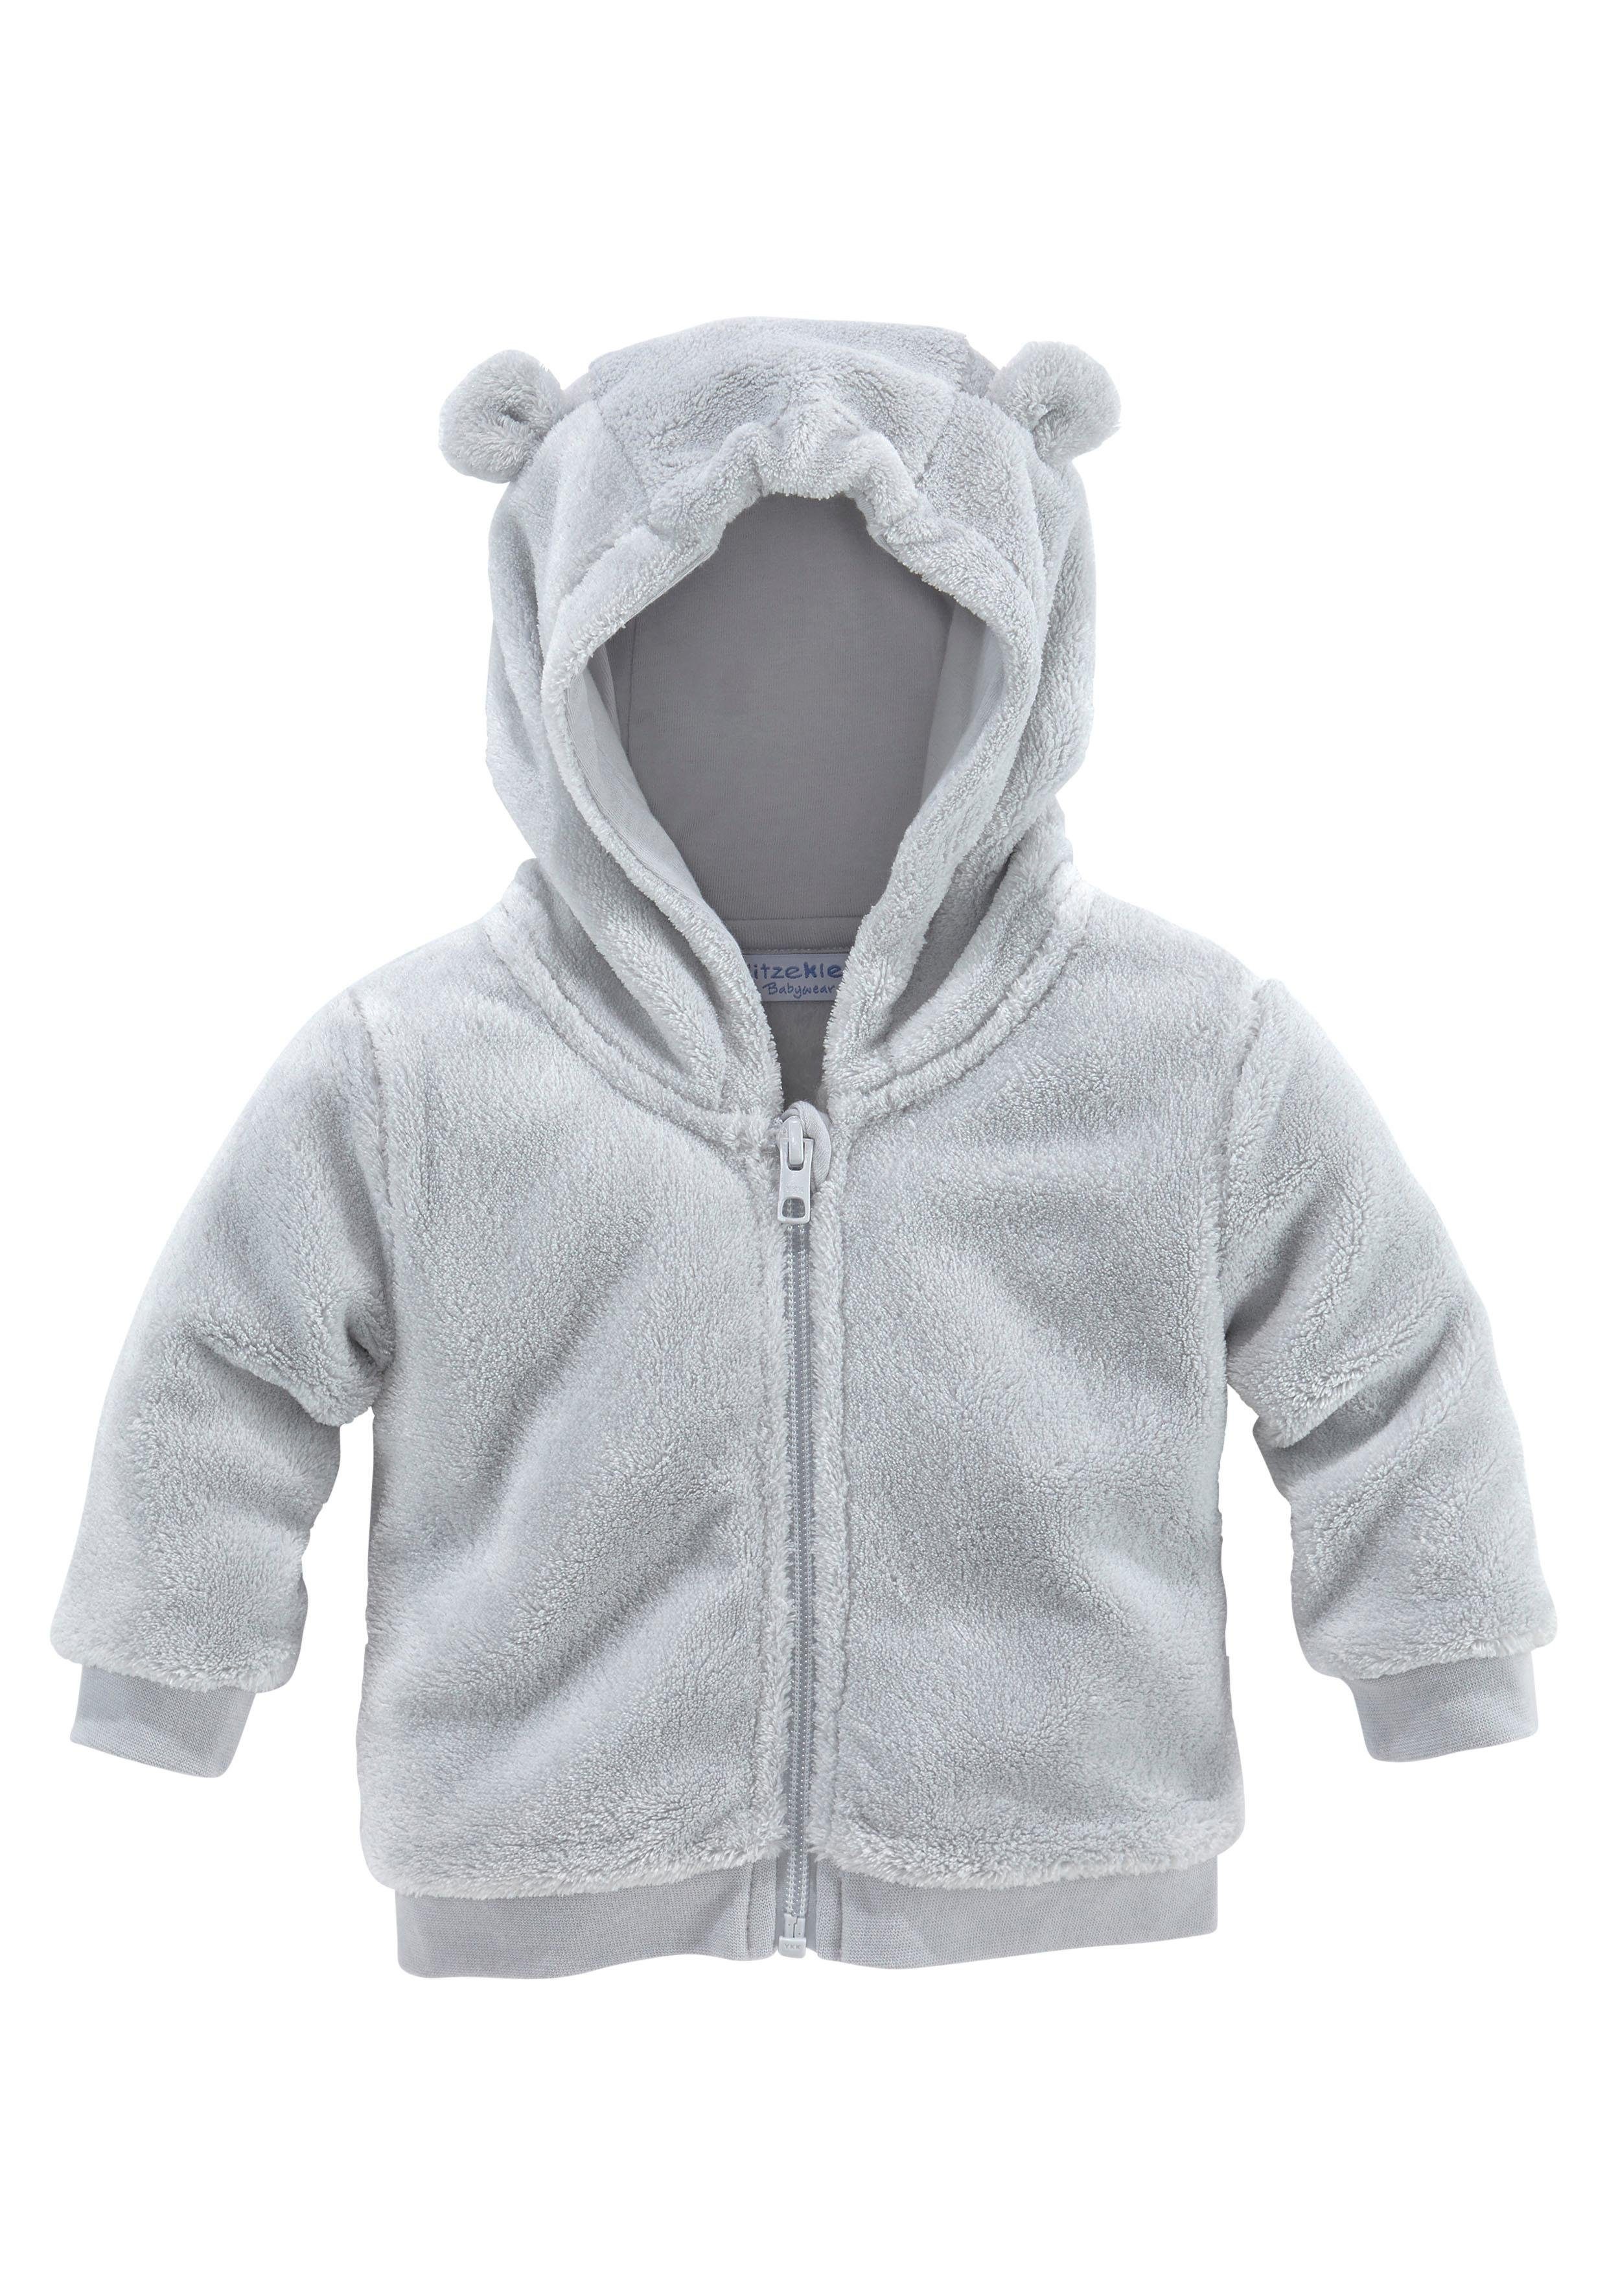 Babyjacken online kaufen » Kleinkinder Jacken | OTTO